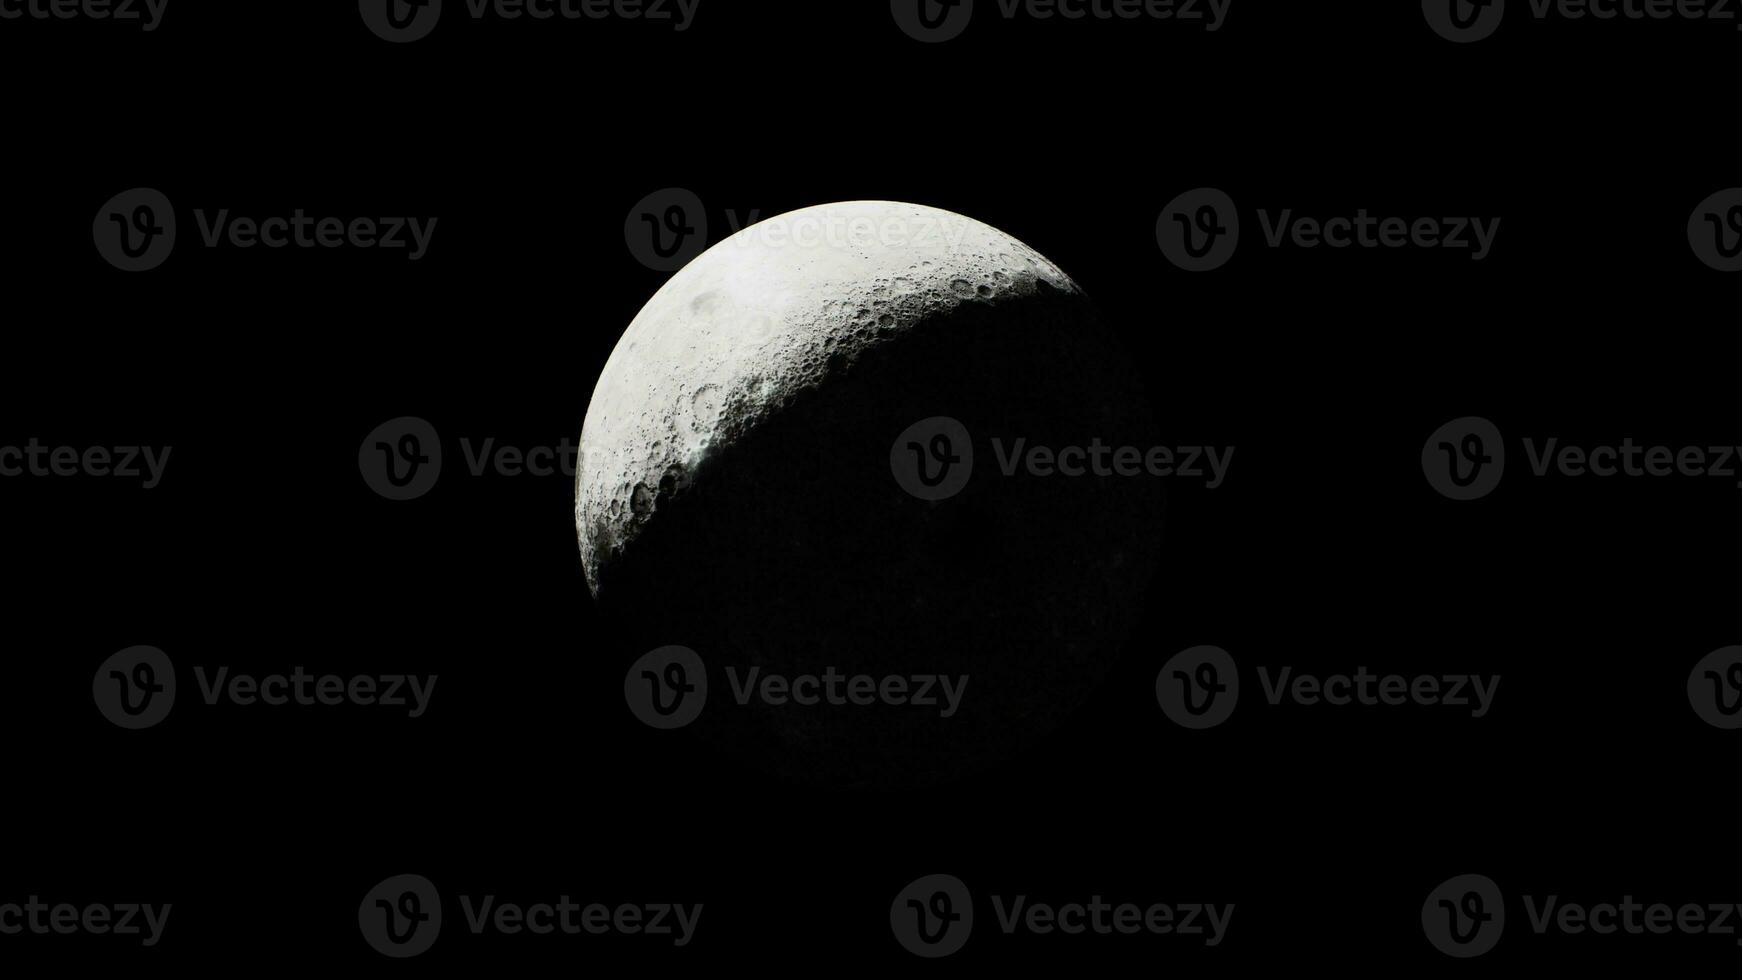 perspectief van de zonovergoten sectie van de maan gezien van ver foto